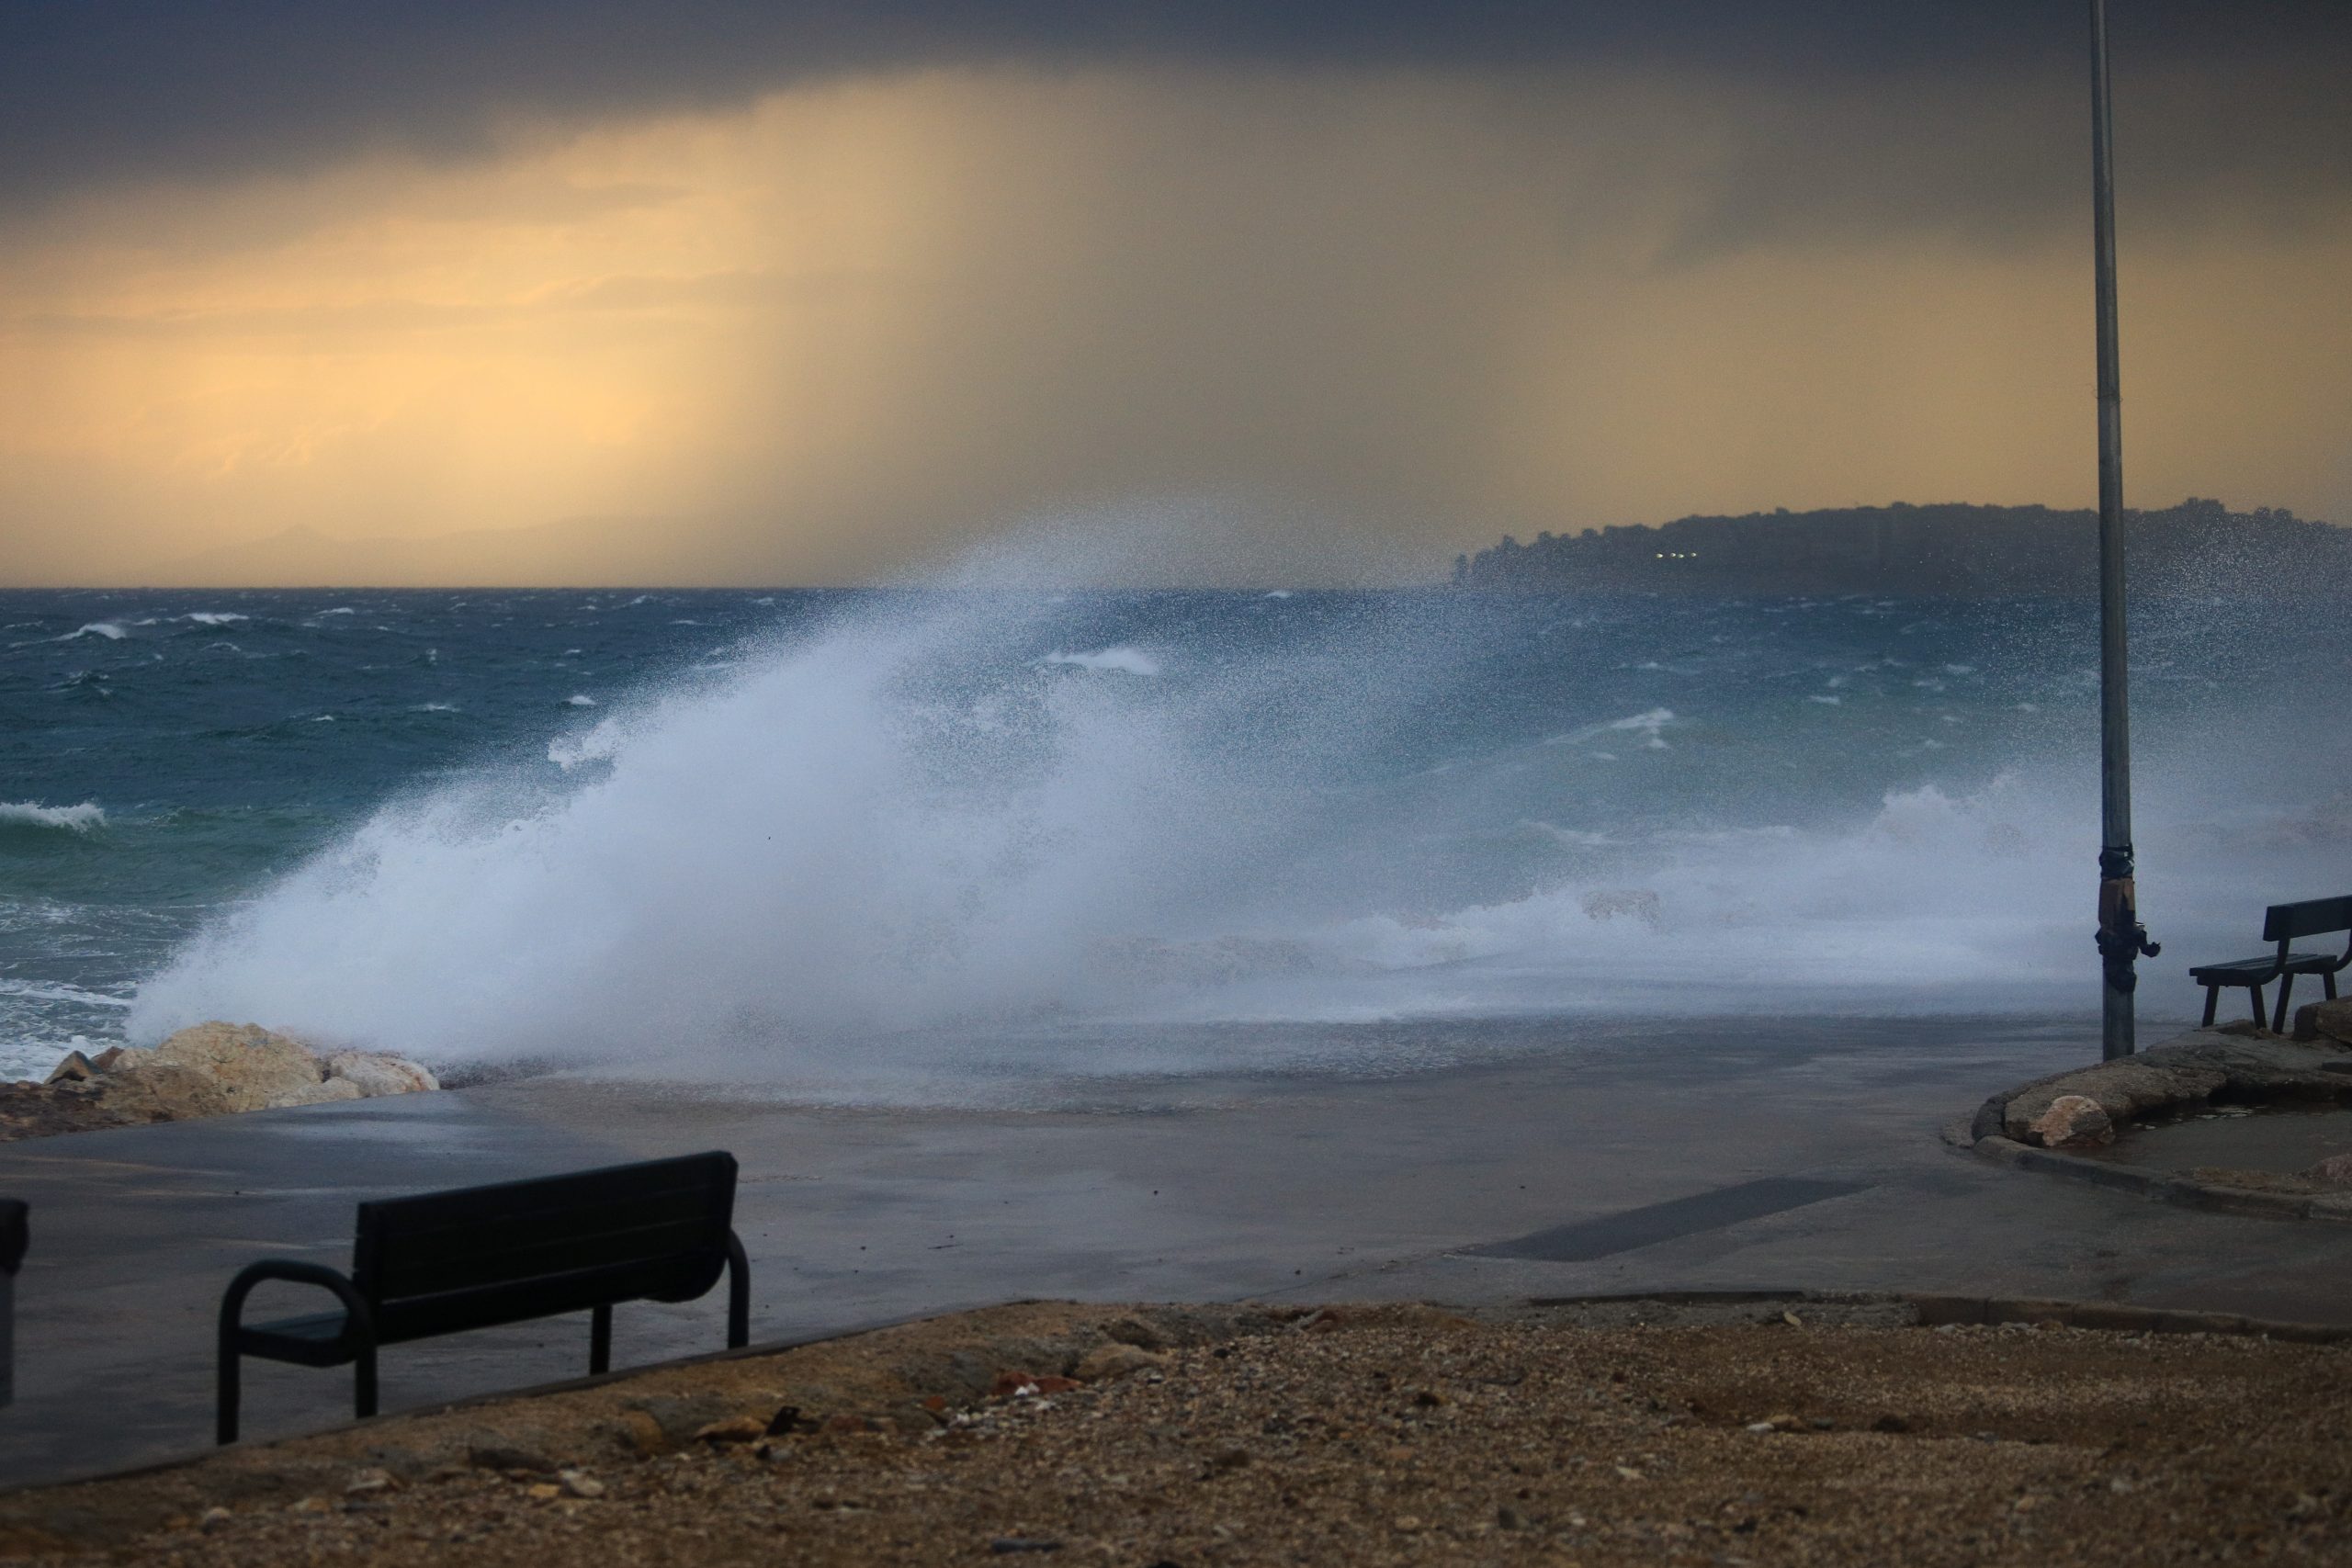 Λέσβος: Λυσσασμένοι άνεμοι «σαρώνουν» το νησί! Ζημιές σε σπίτια, κλειστά τα σχολεία